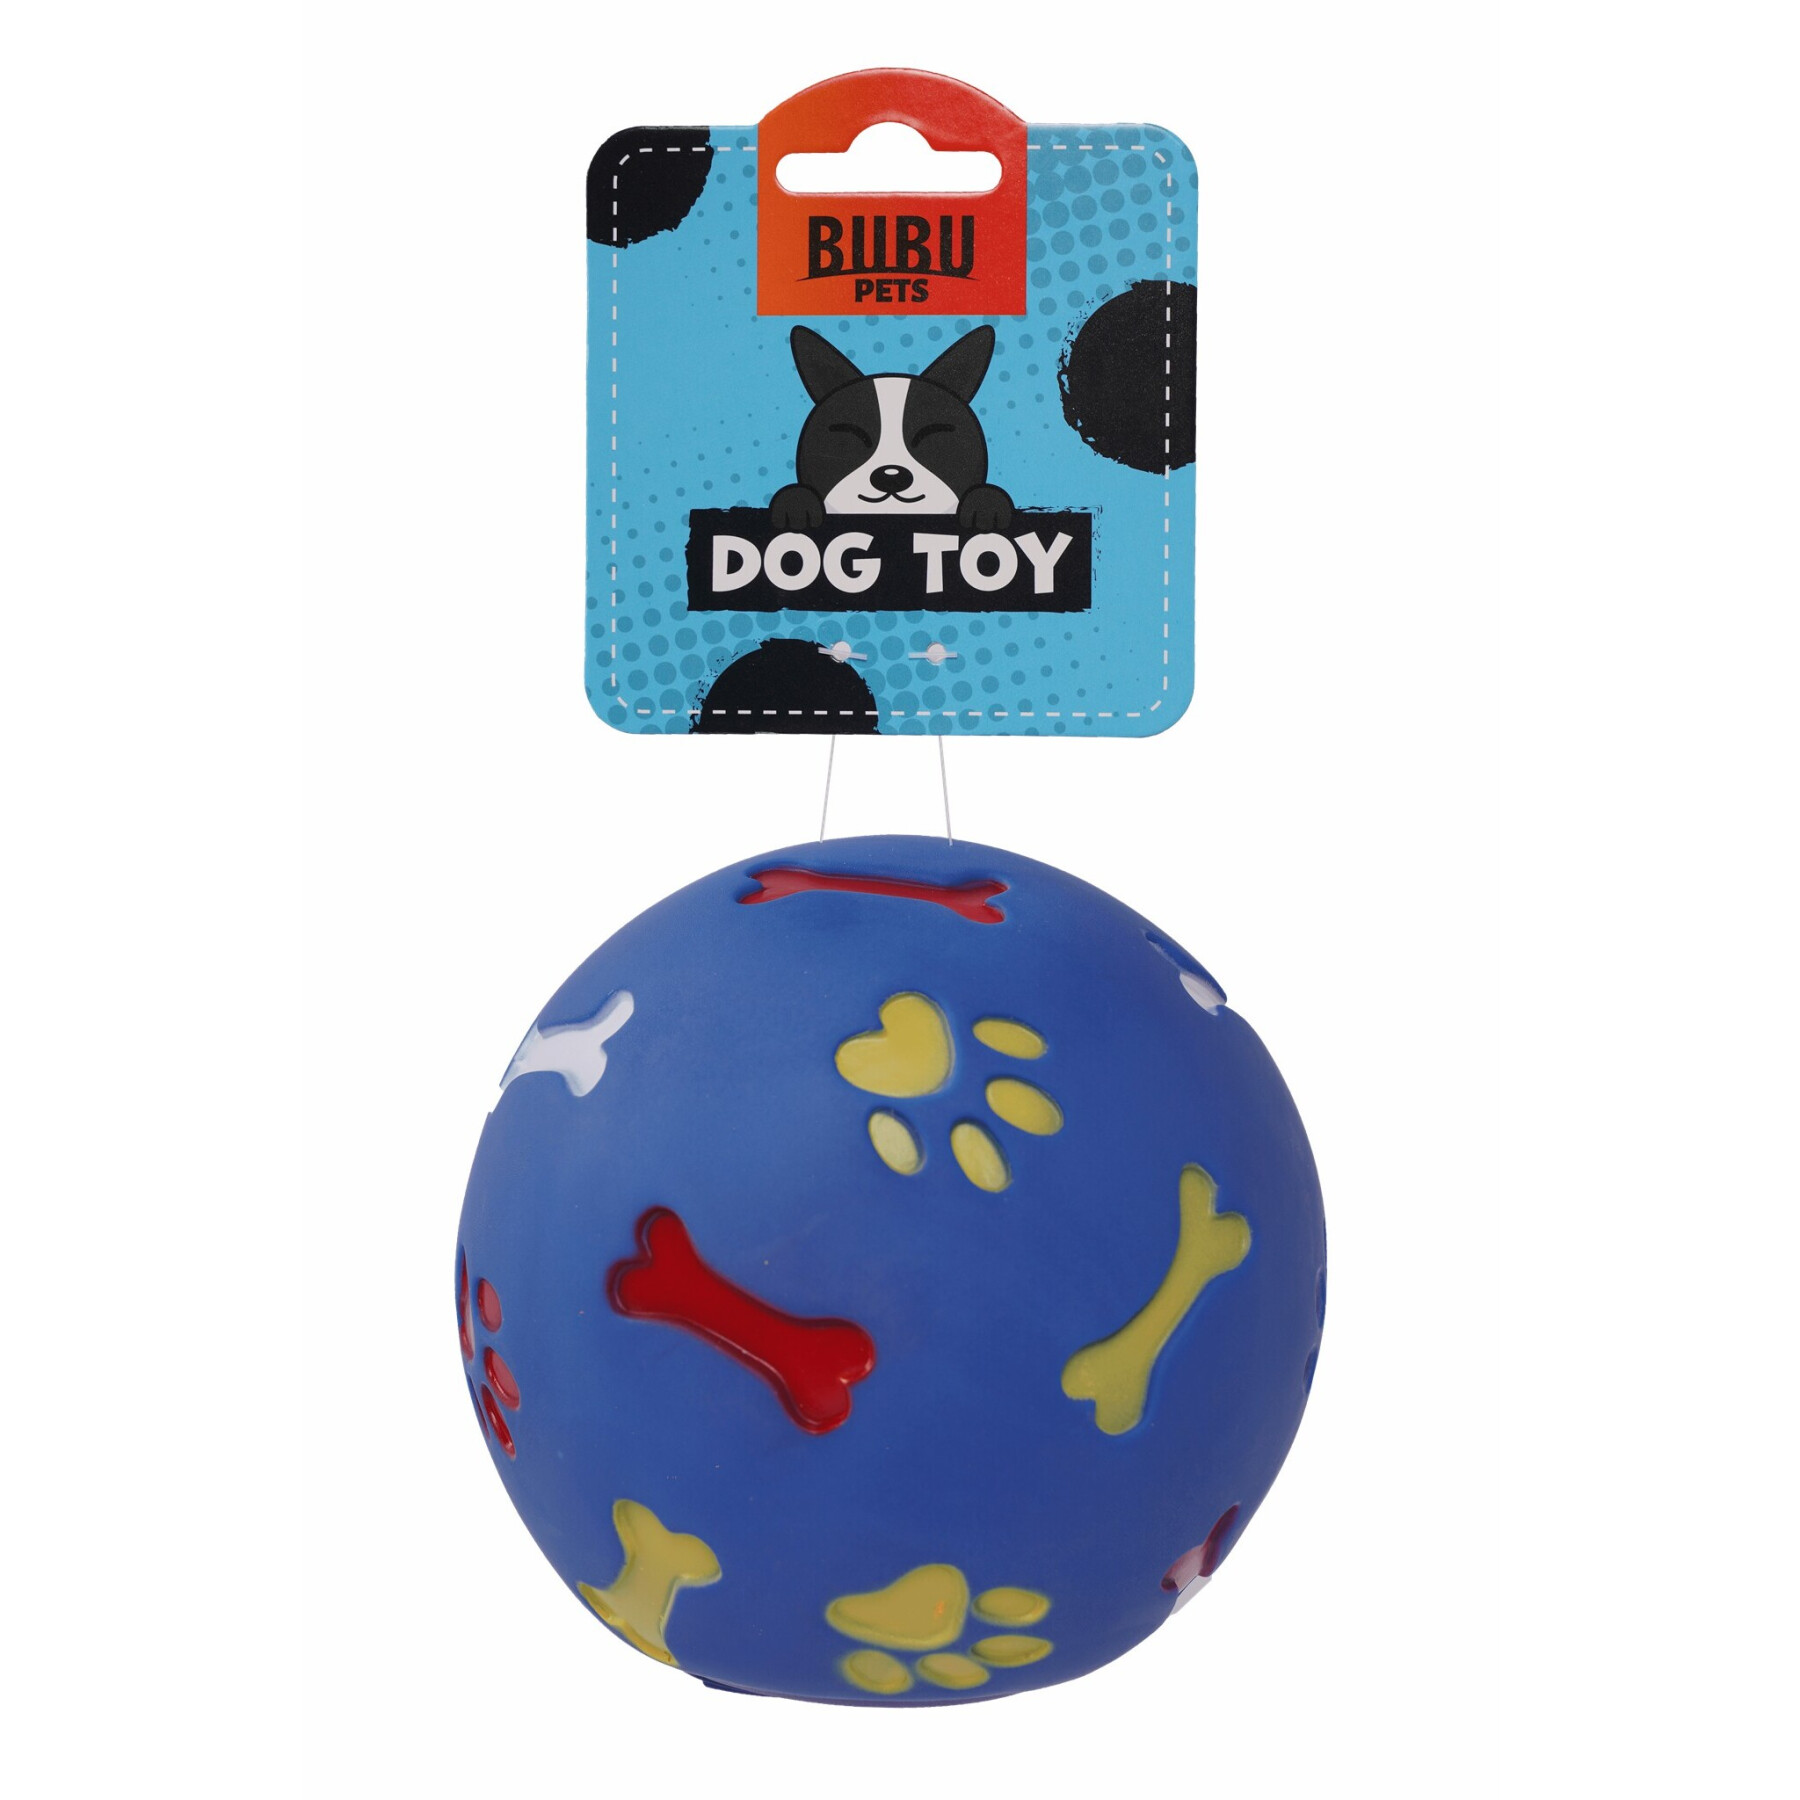 Juguete para perros pelota mordisqueable BUBU Pets